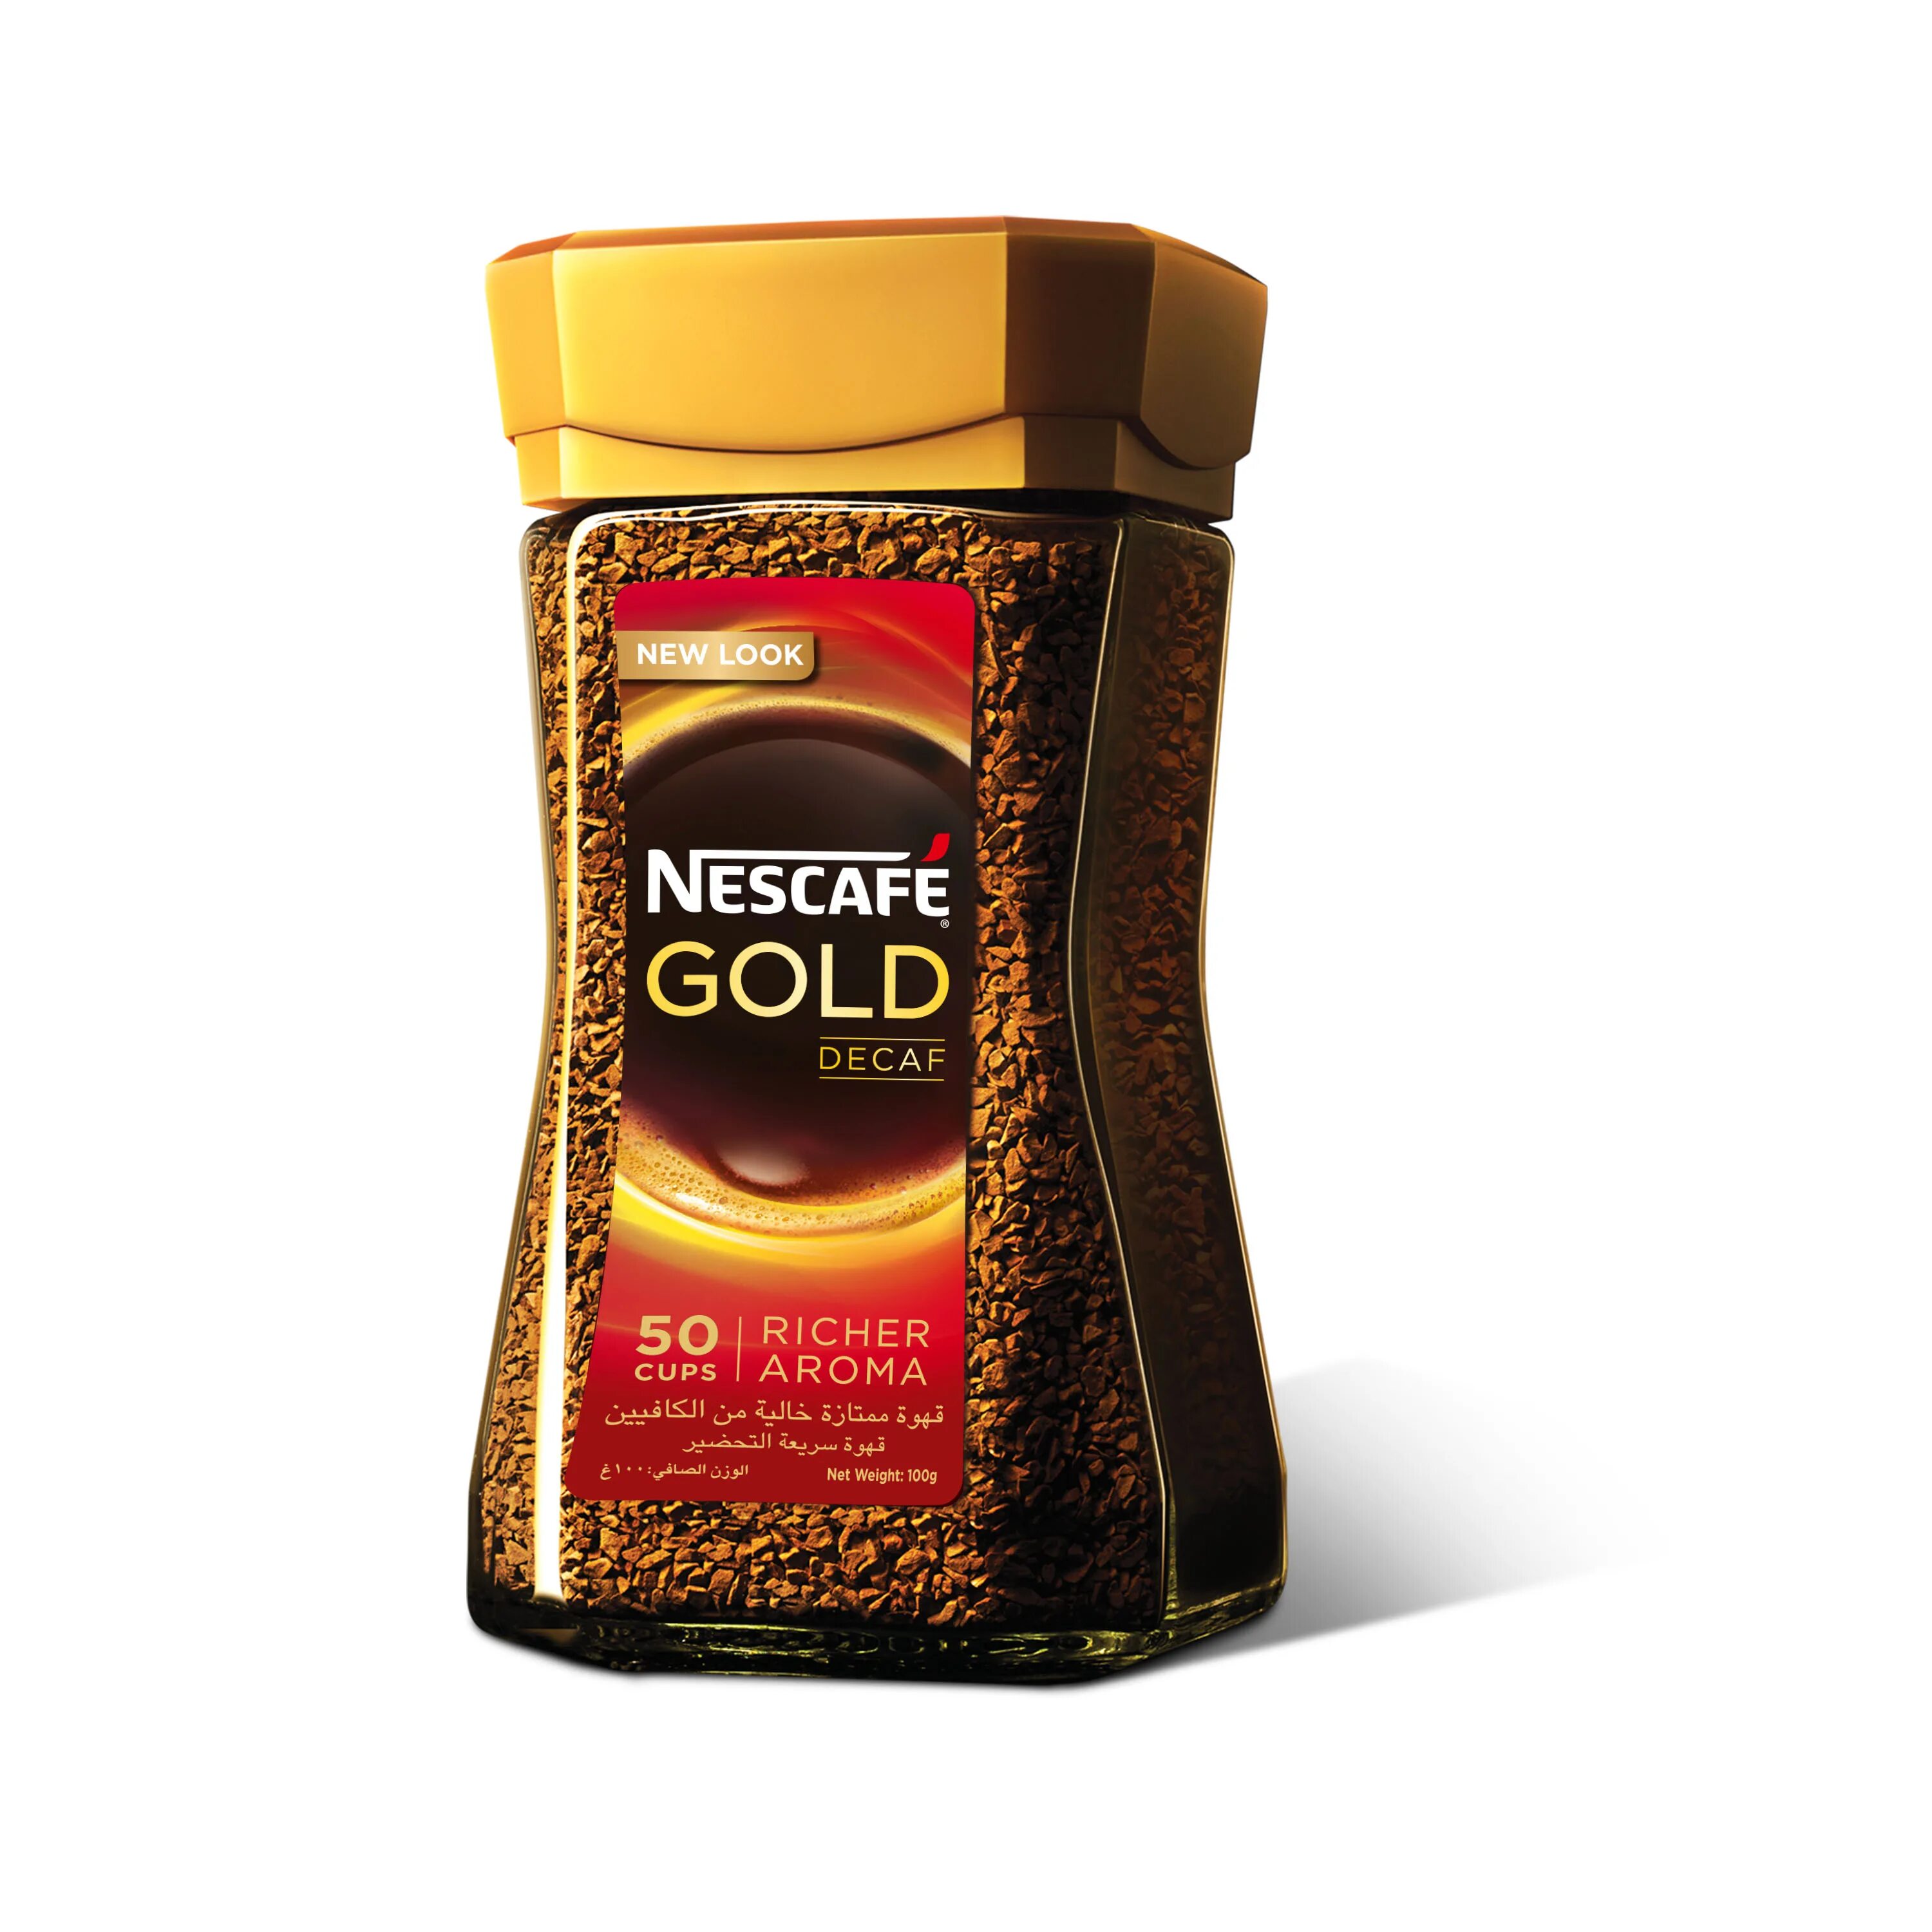 Nescafe Gold Rich Aroma 6. Кофе Nescafe Gold Aroma. Nescafe Gold Decaf Rich Aroma. Кофе Нескафе Голд в зернах. Кофе растворимый 1 кг